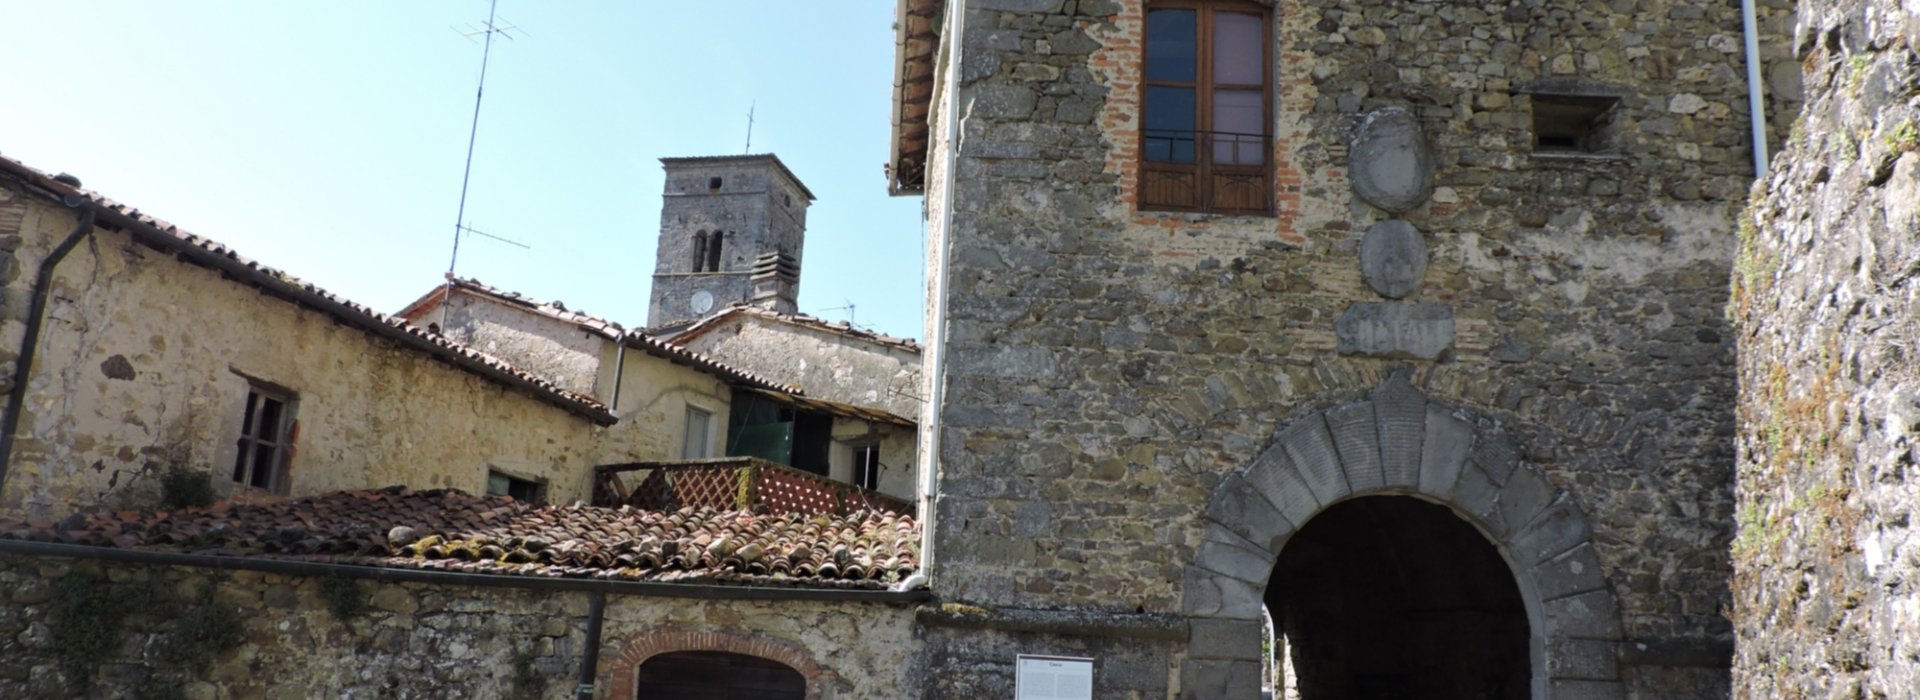 From Castelnuovo di Garfagnana to Barga Tuscany